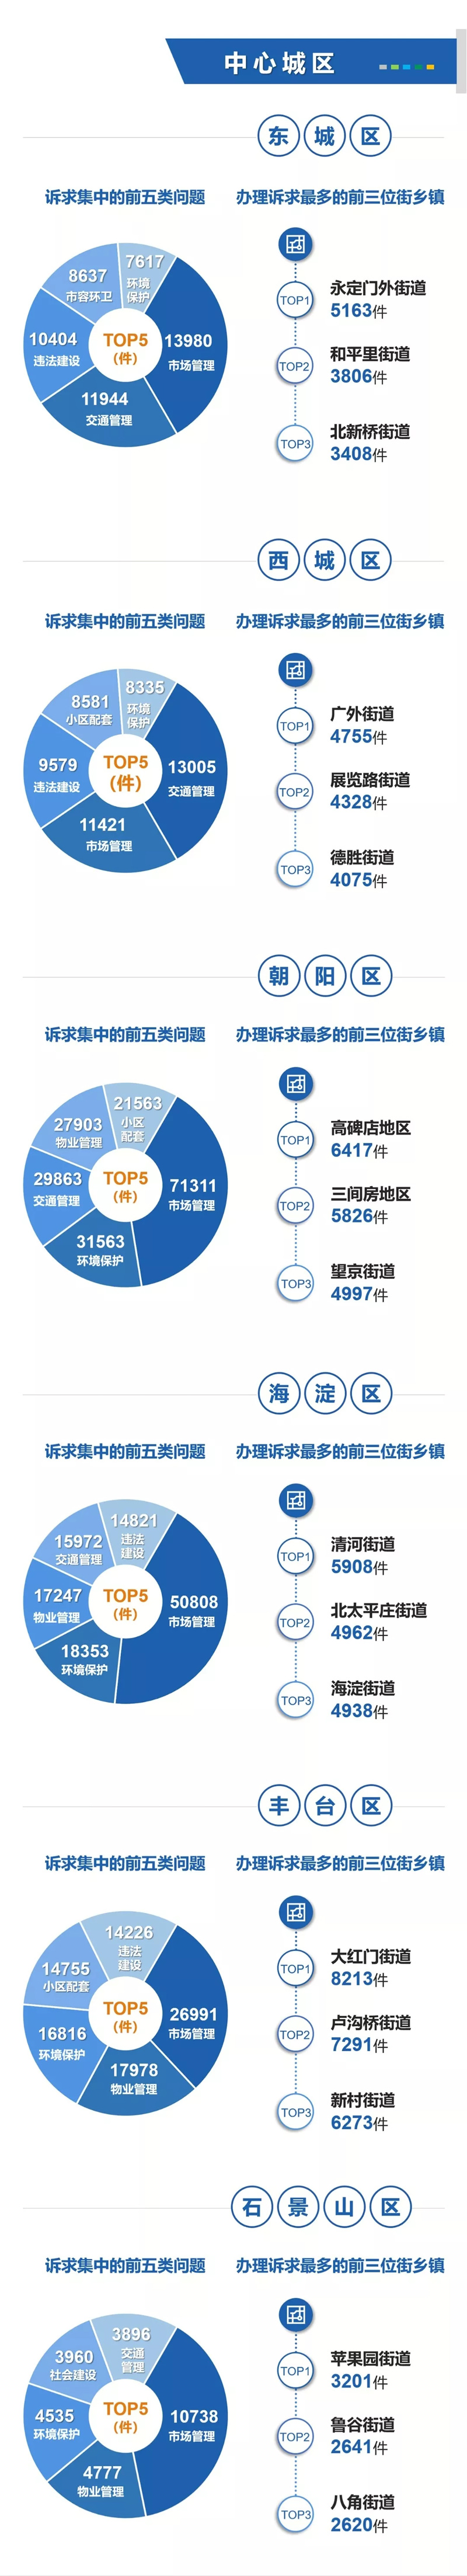 数读：北京12345热线2019年度数据报告_地方政务